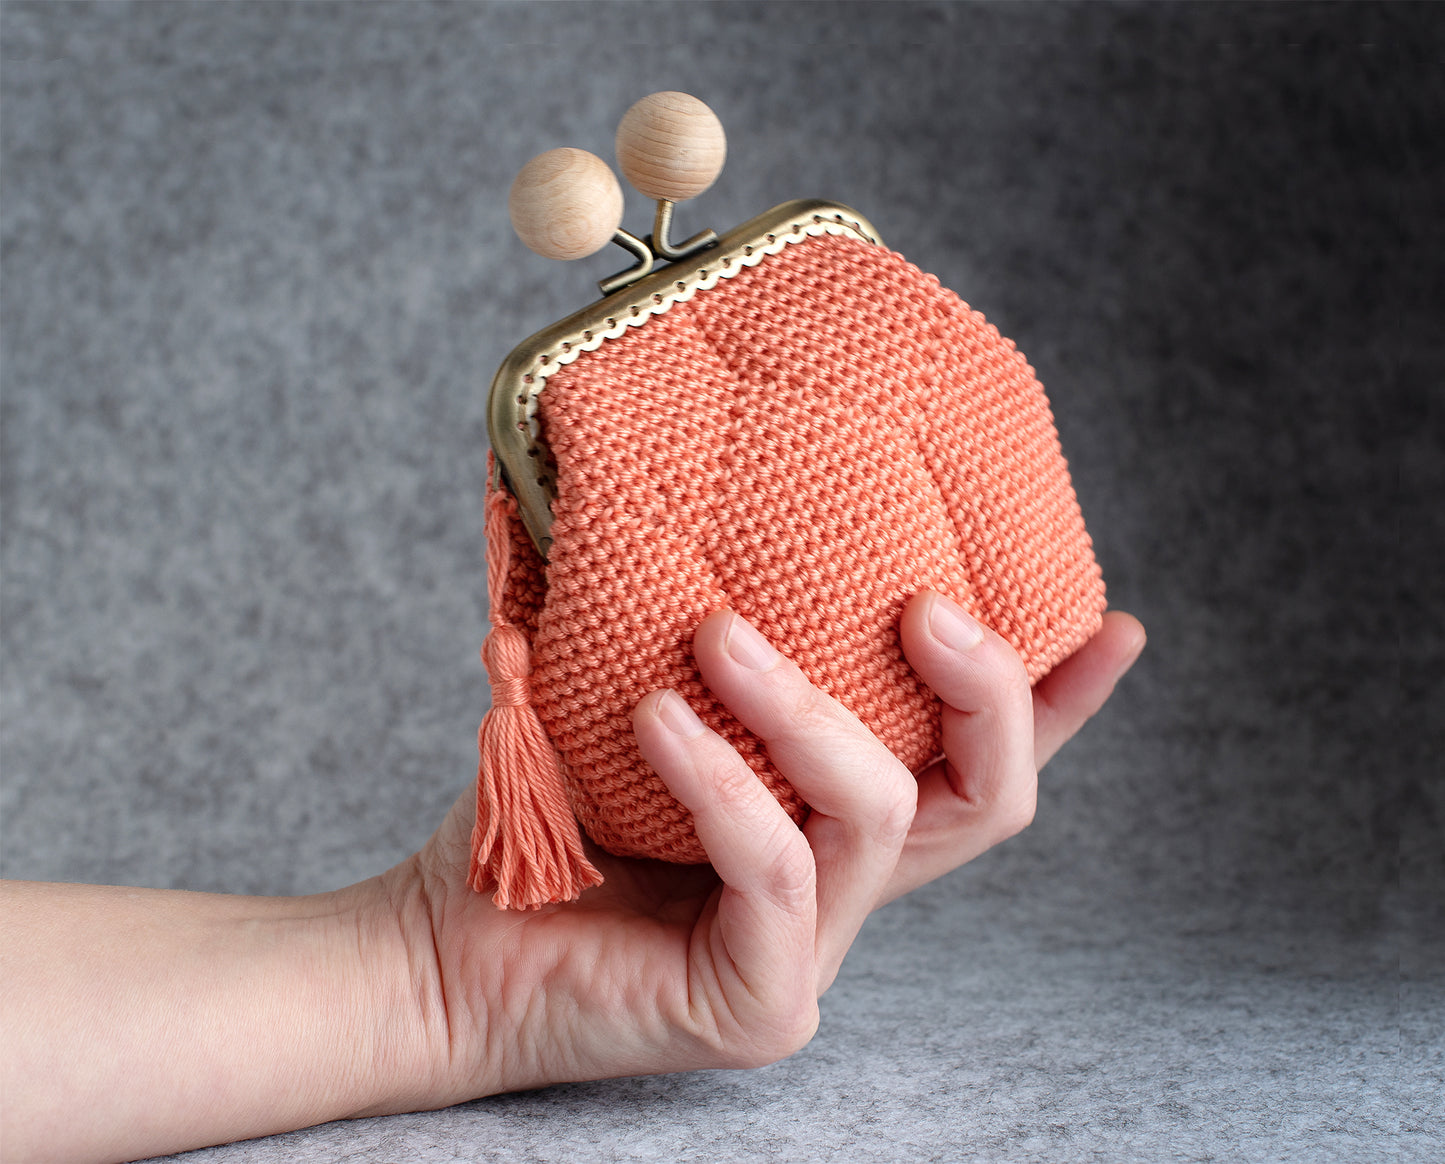 GEOMETRIC I design crochet purse pattern. Rectangular base, for 8.5cm frame